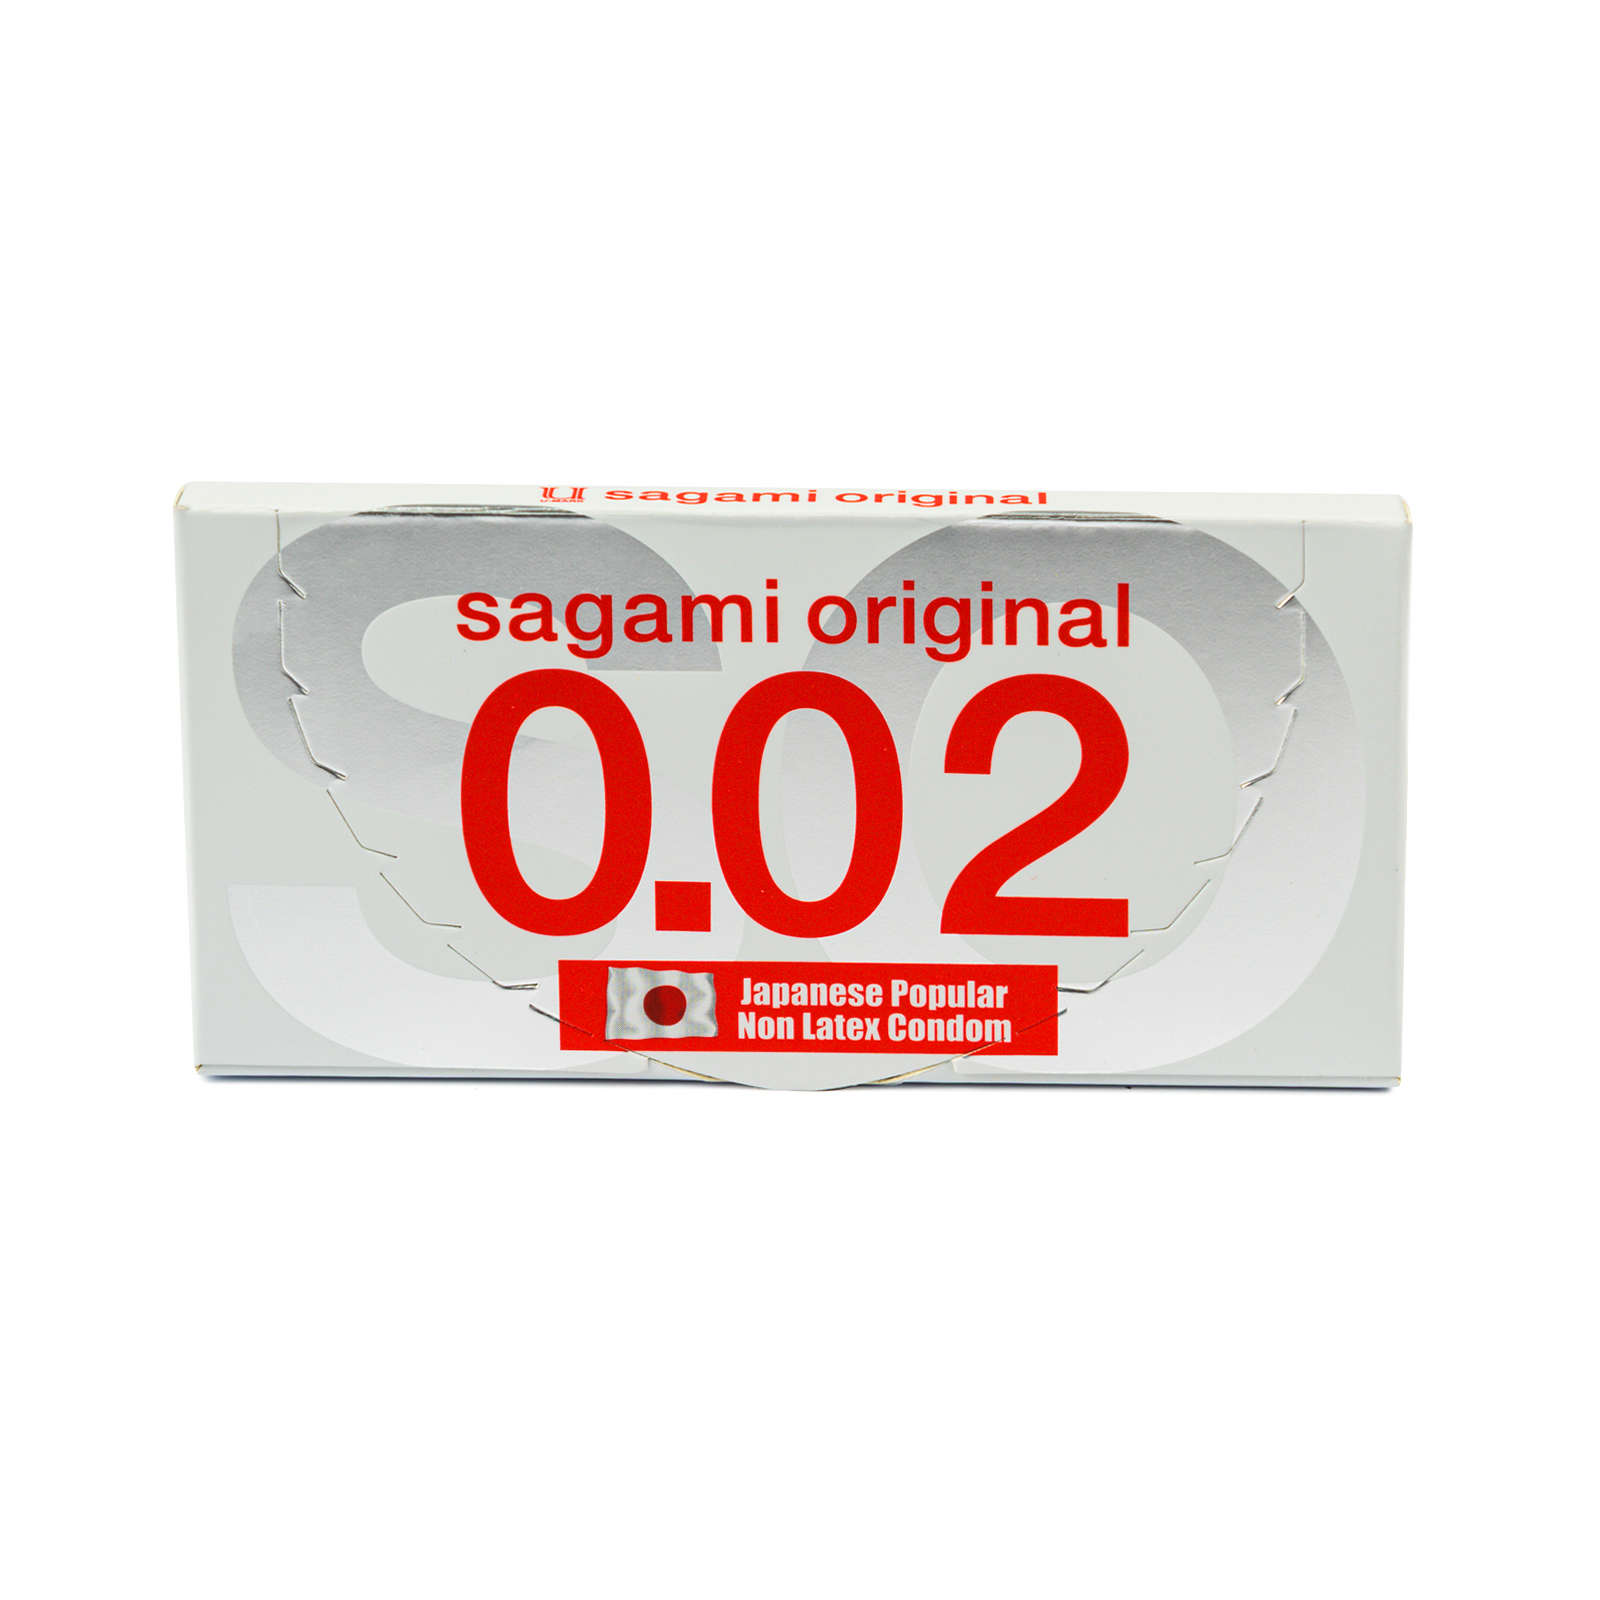 Купить Original ультратонкие, Презервативы Sagami Original 002 полиуретановые 2 шт.